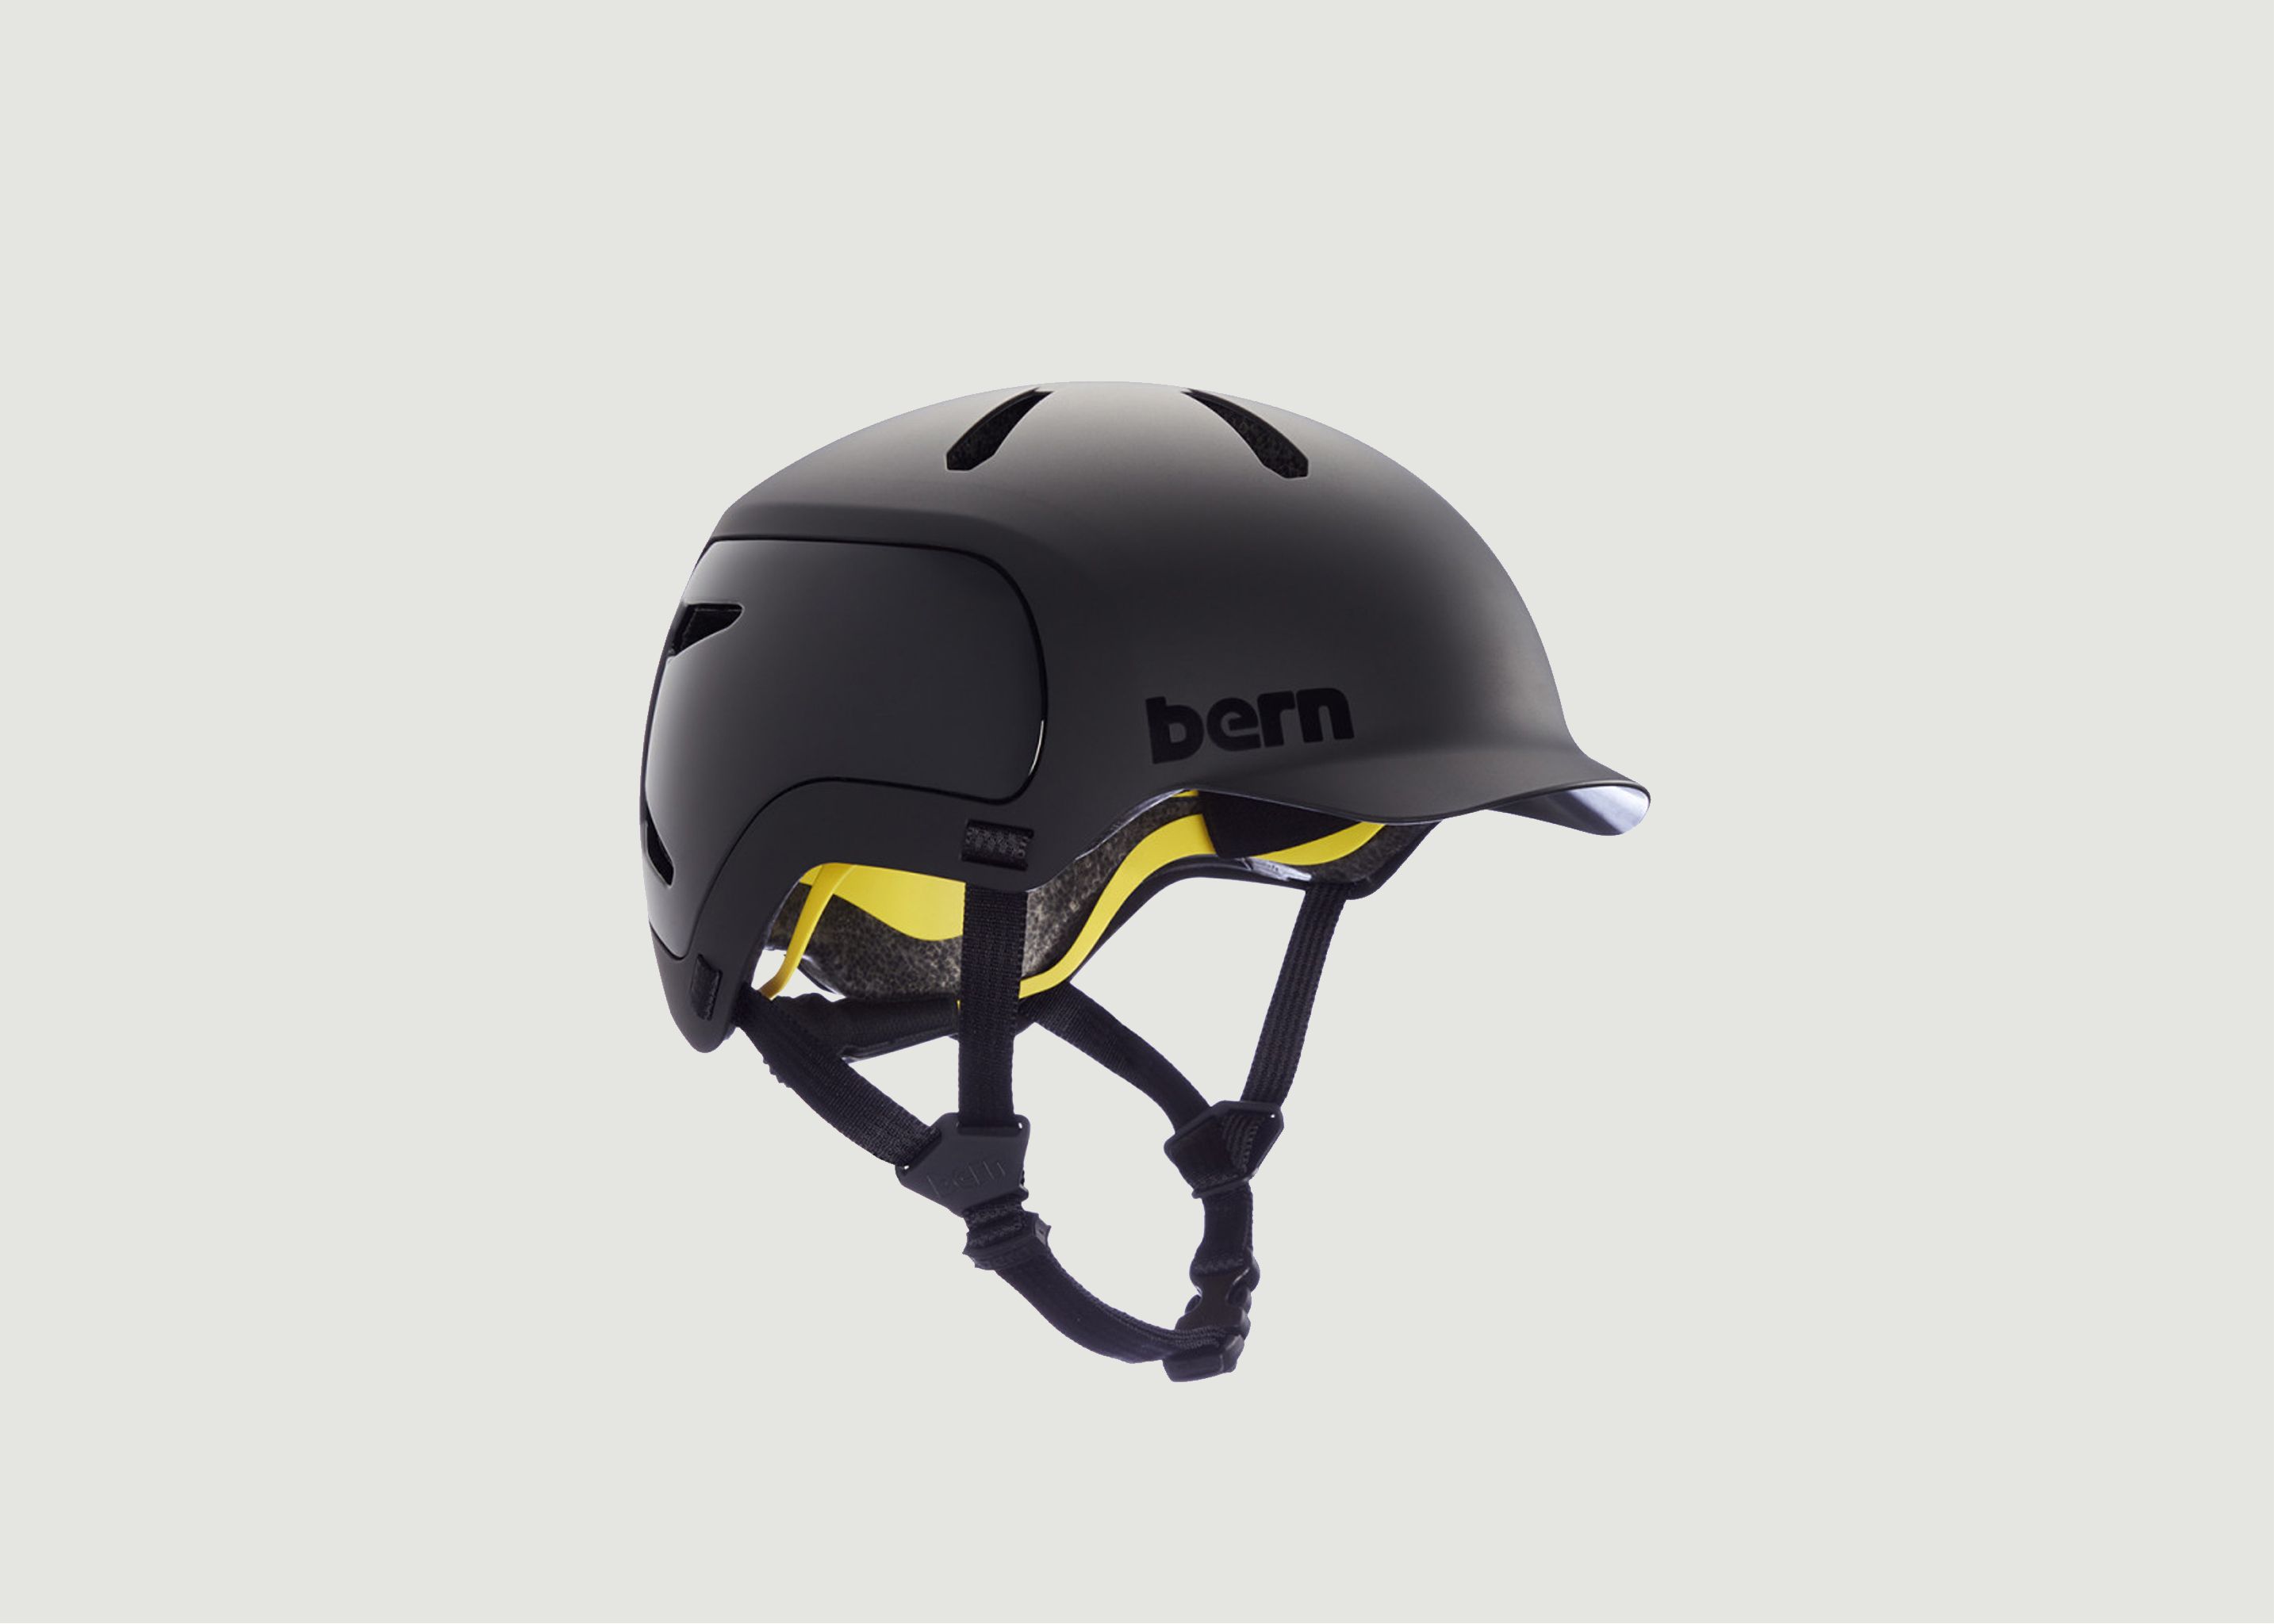 WATTS 2.0 MIPS bicycle helmet - Bern